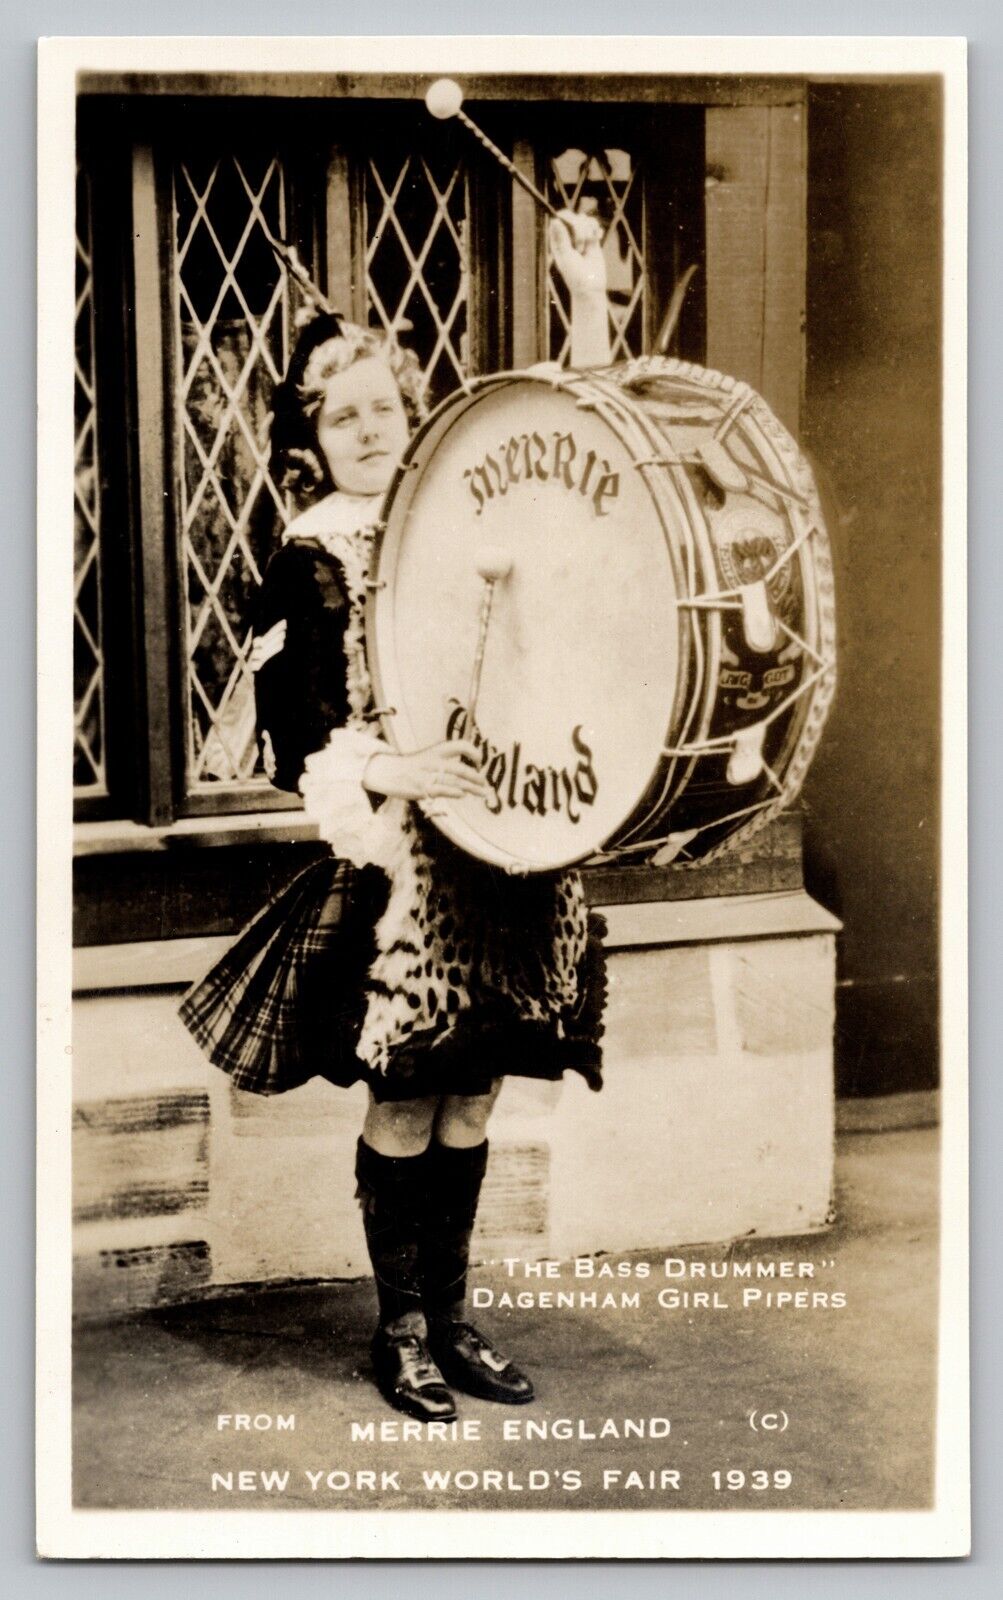 Vtg RPPC New York Worlds Fair Drummer Dagenham Girl Pipers Merrie England 1939